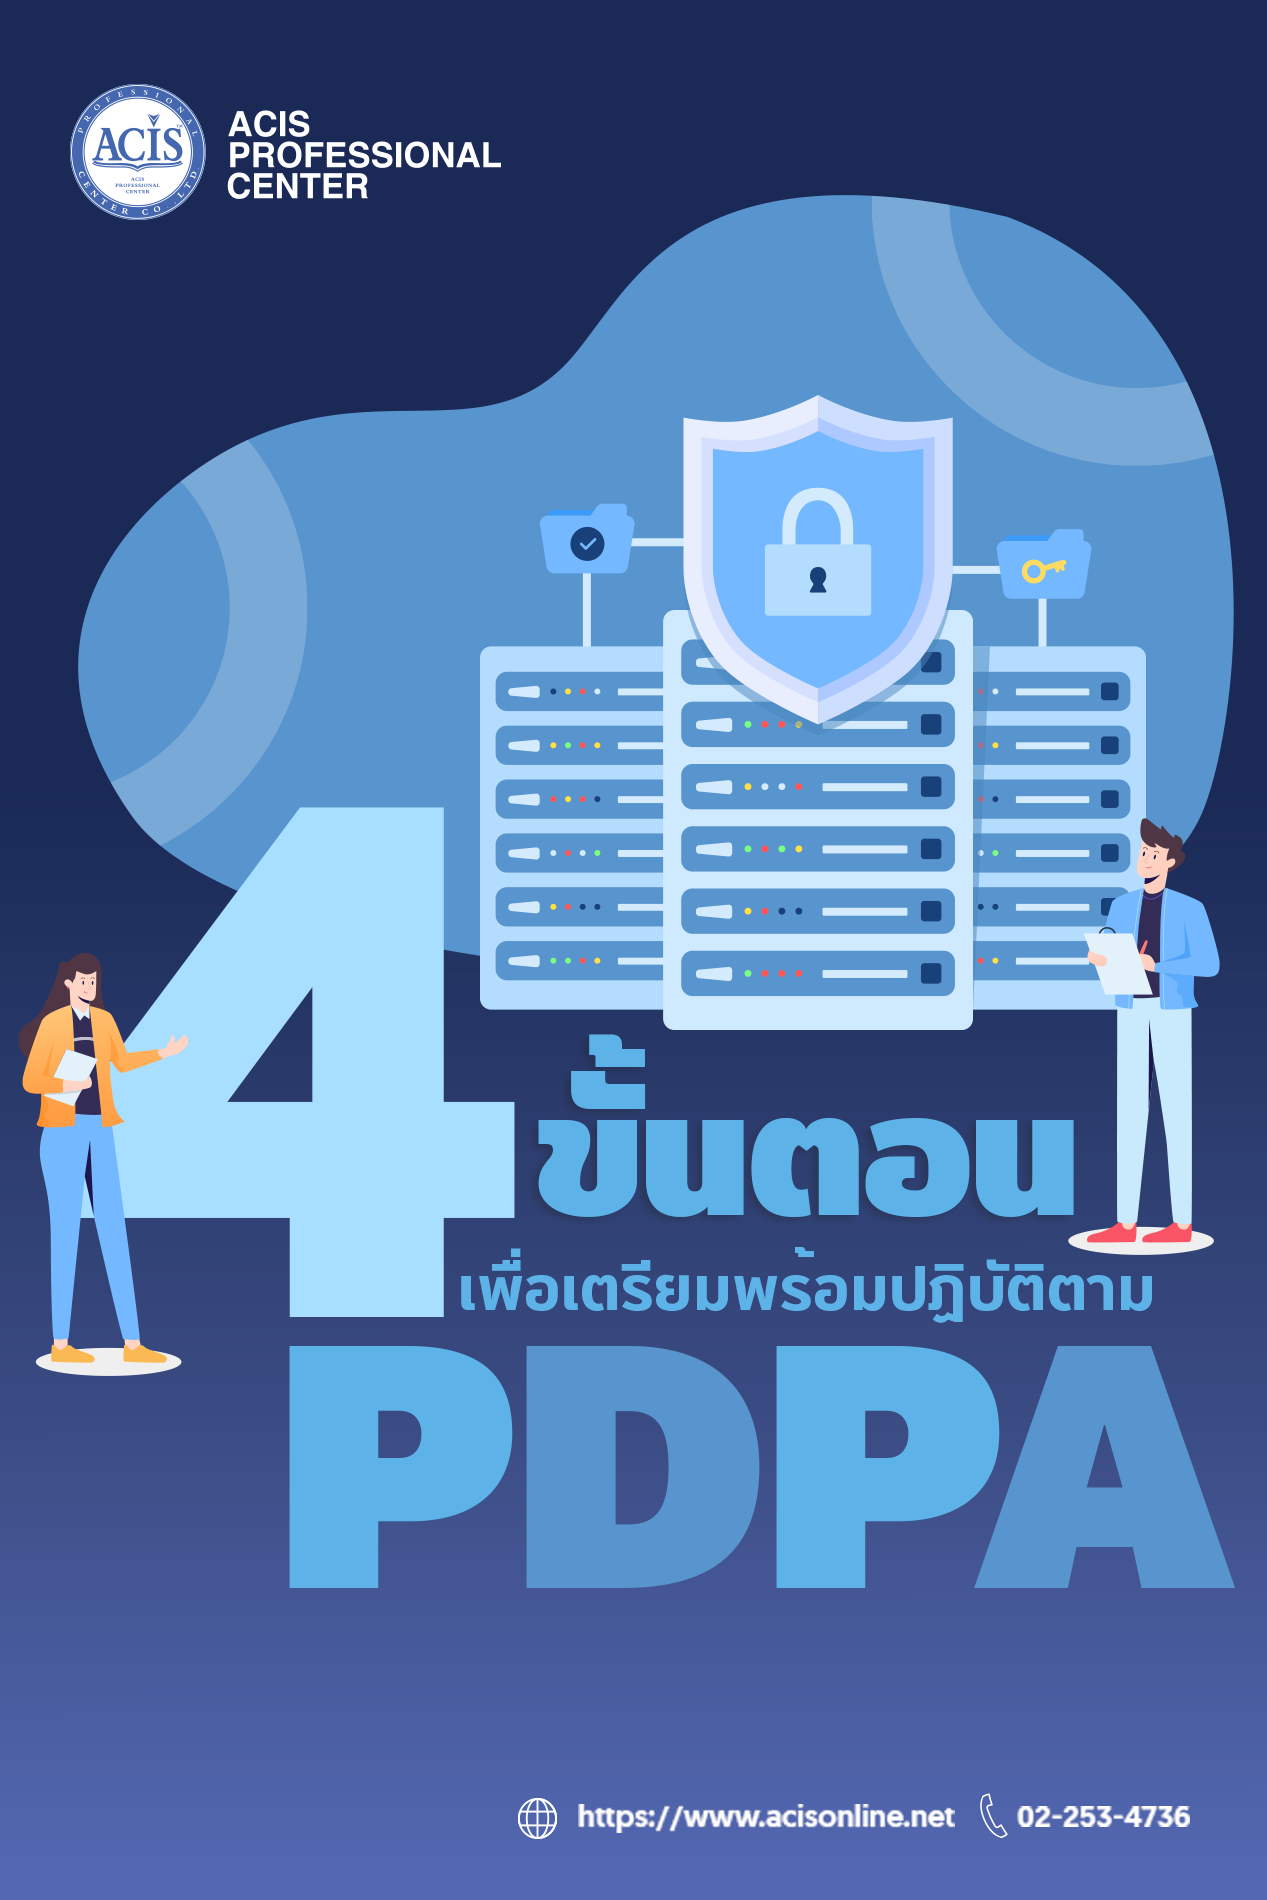 สำหรับบริษัทหรือองค์กรใดที่ต้องการทราบข้อมูลเพิ่มเติมเกี่ยวกับ PDPA (Personal Data Protection Act) กฎหมายคุ้มครองข้อมูลส่วนบุคคลของไทย 